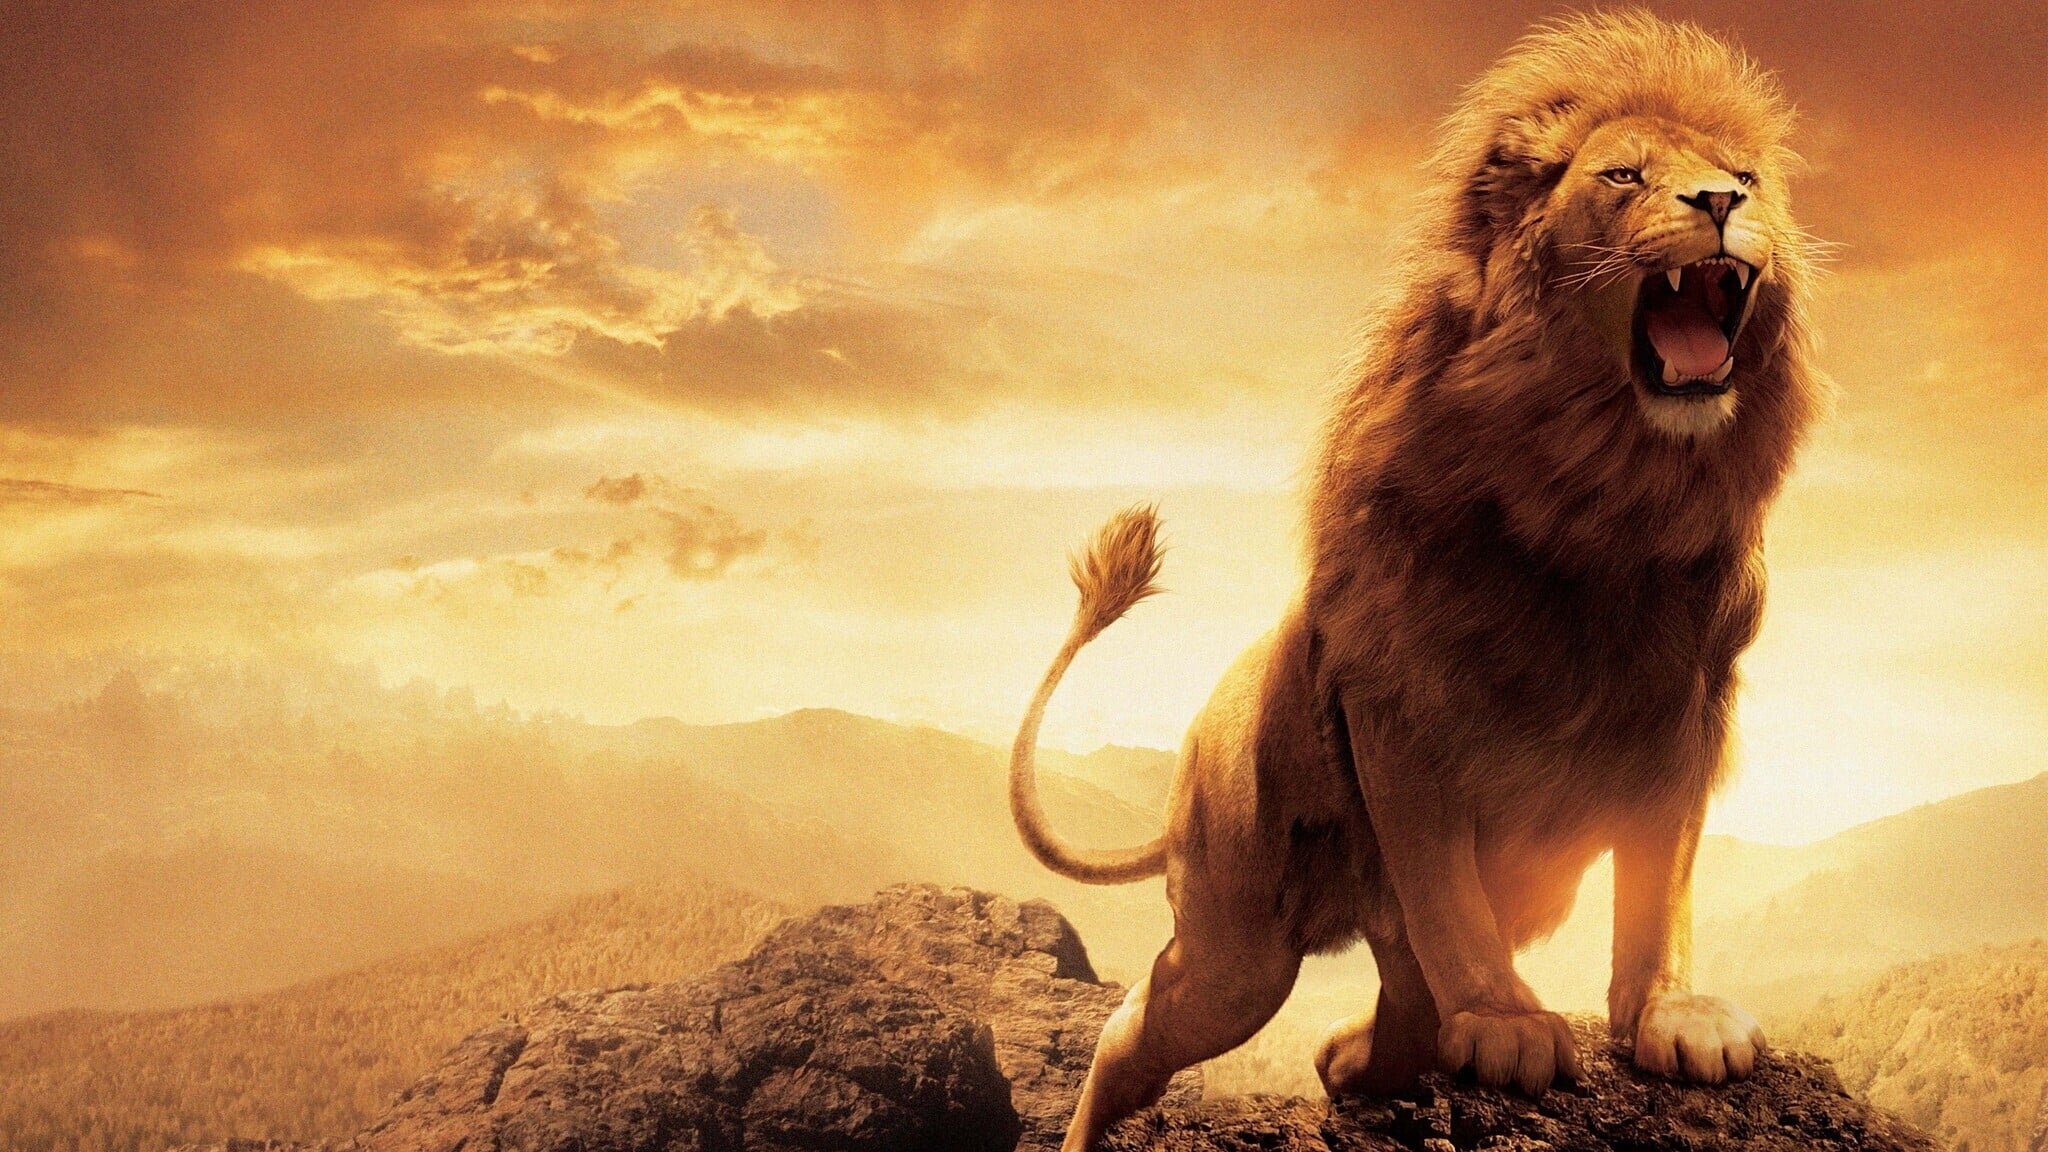 Narnian tarinat: Velho ja leijona (2005)